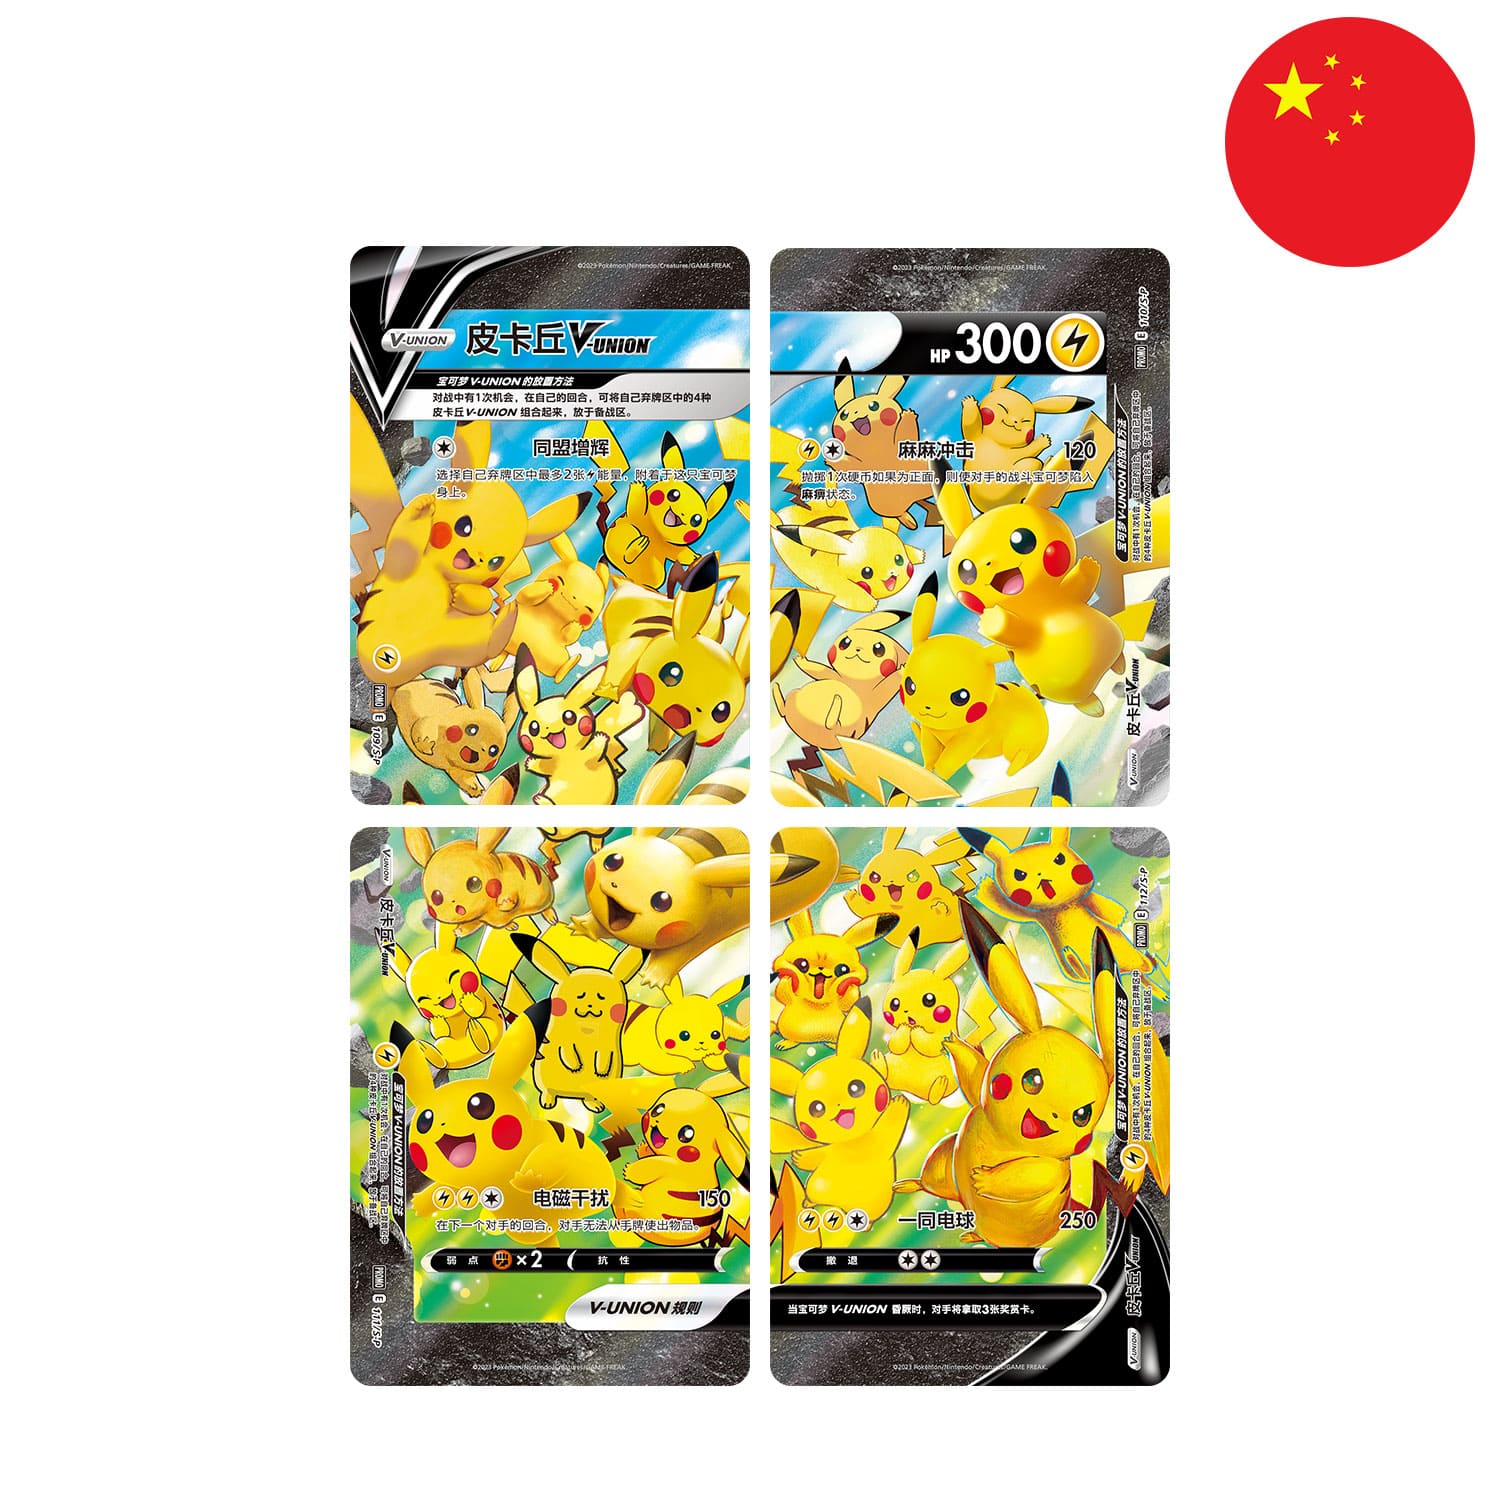 Die chinesische V-Union Pikachu Karte, alle 4 Pokemon Karten sortiert mit der Flagge Chinas in der Ecke.